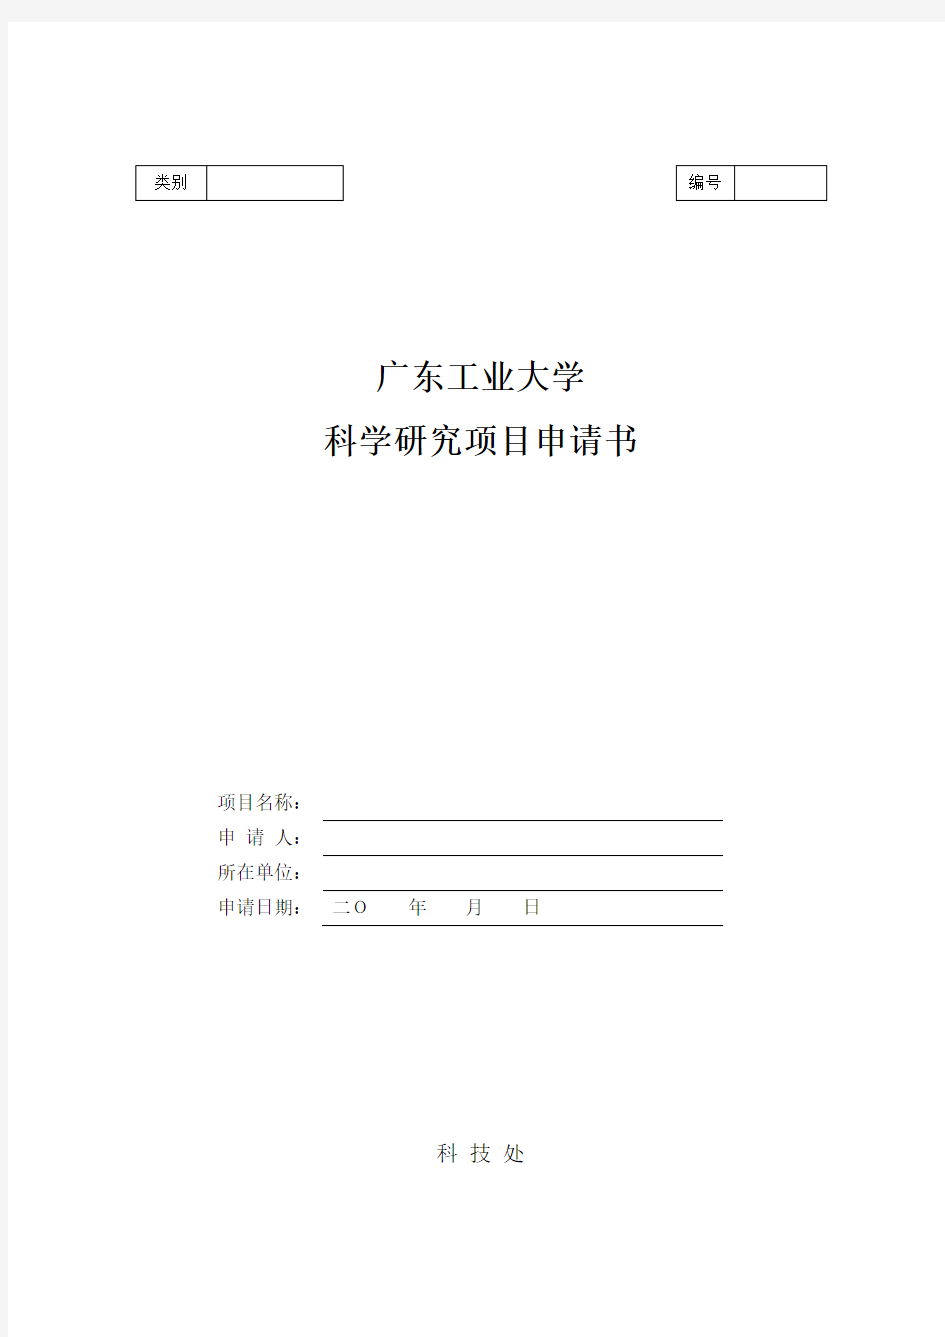 广东工业大学科学研究项目申请书